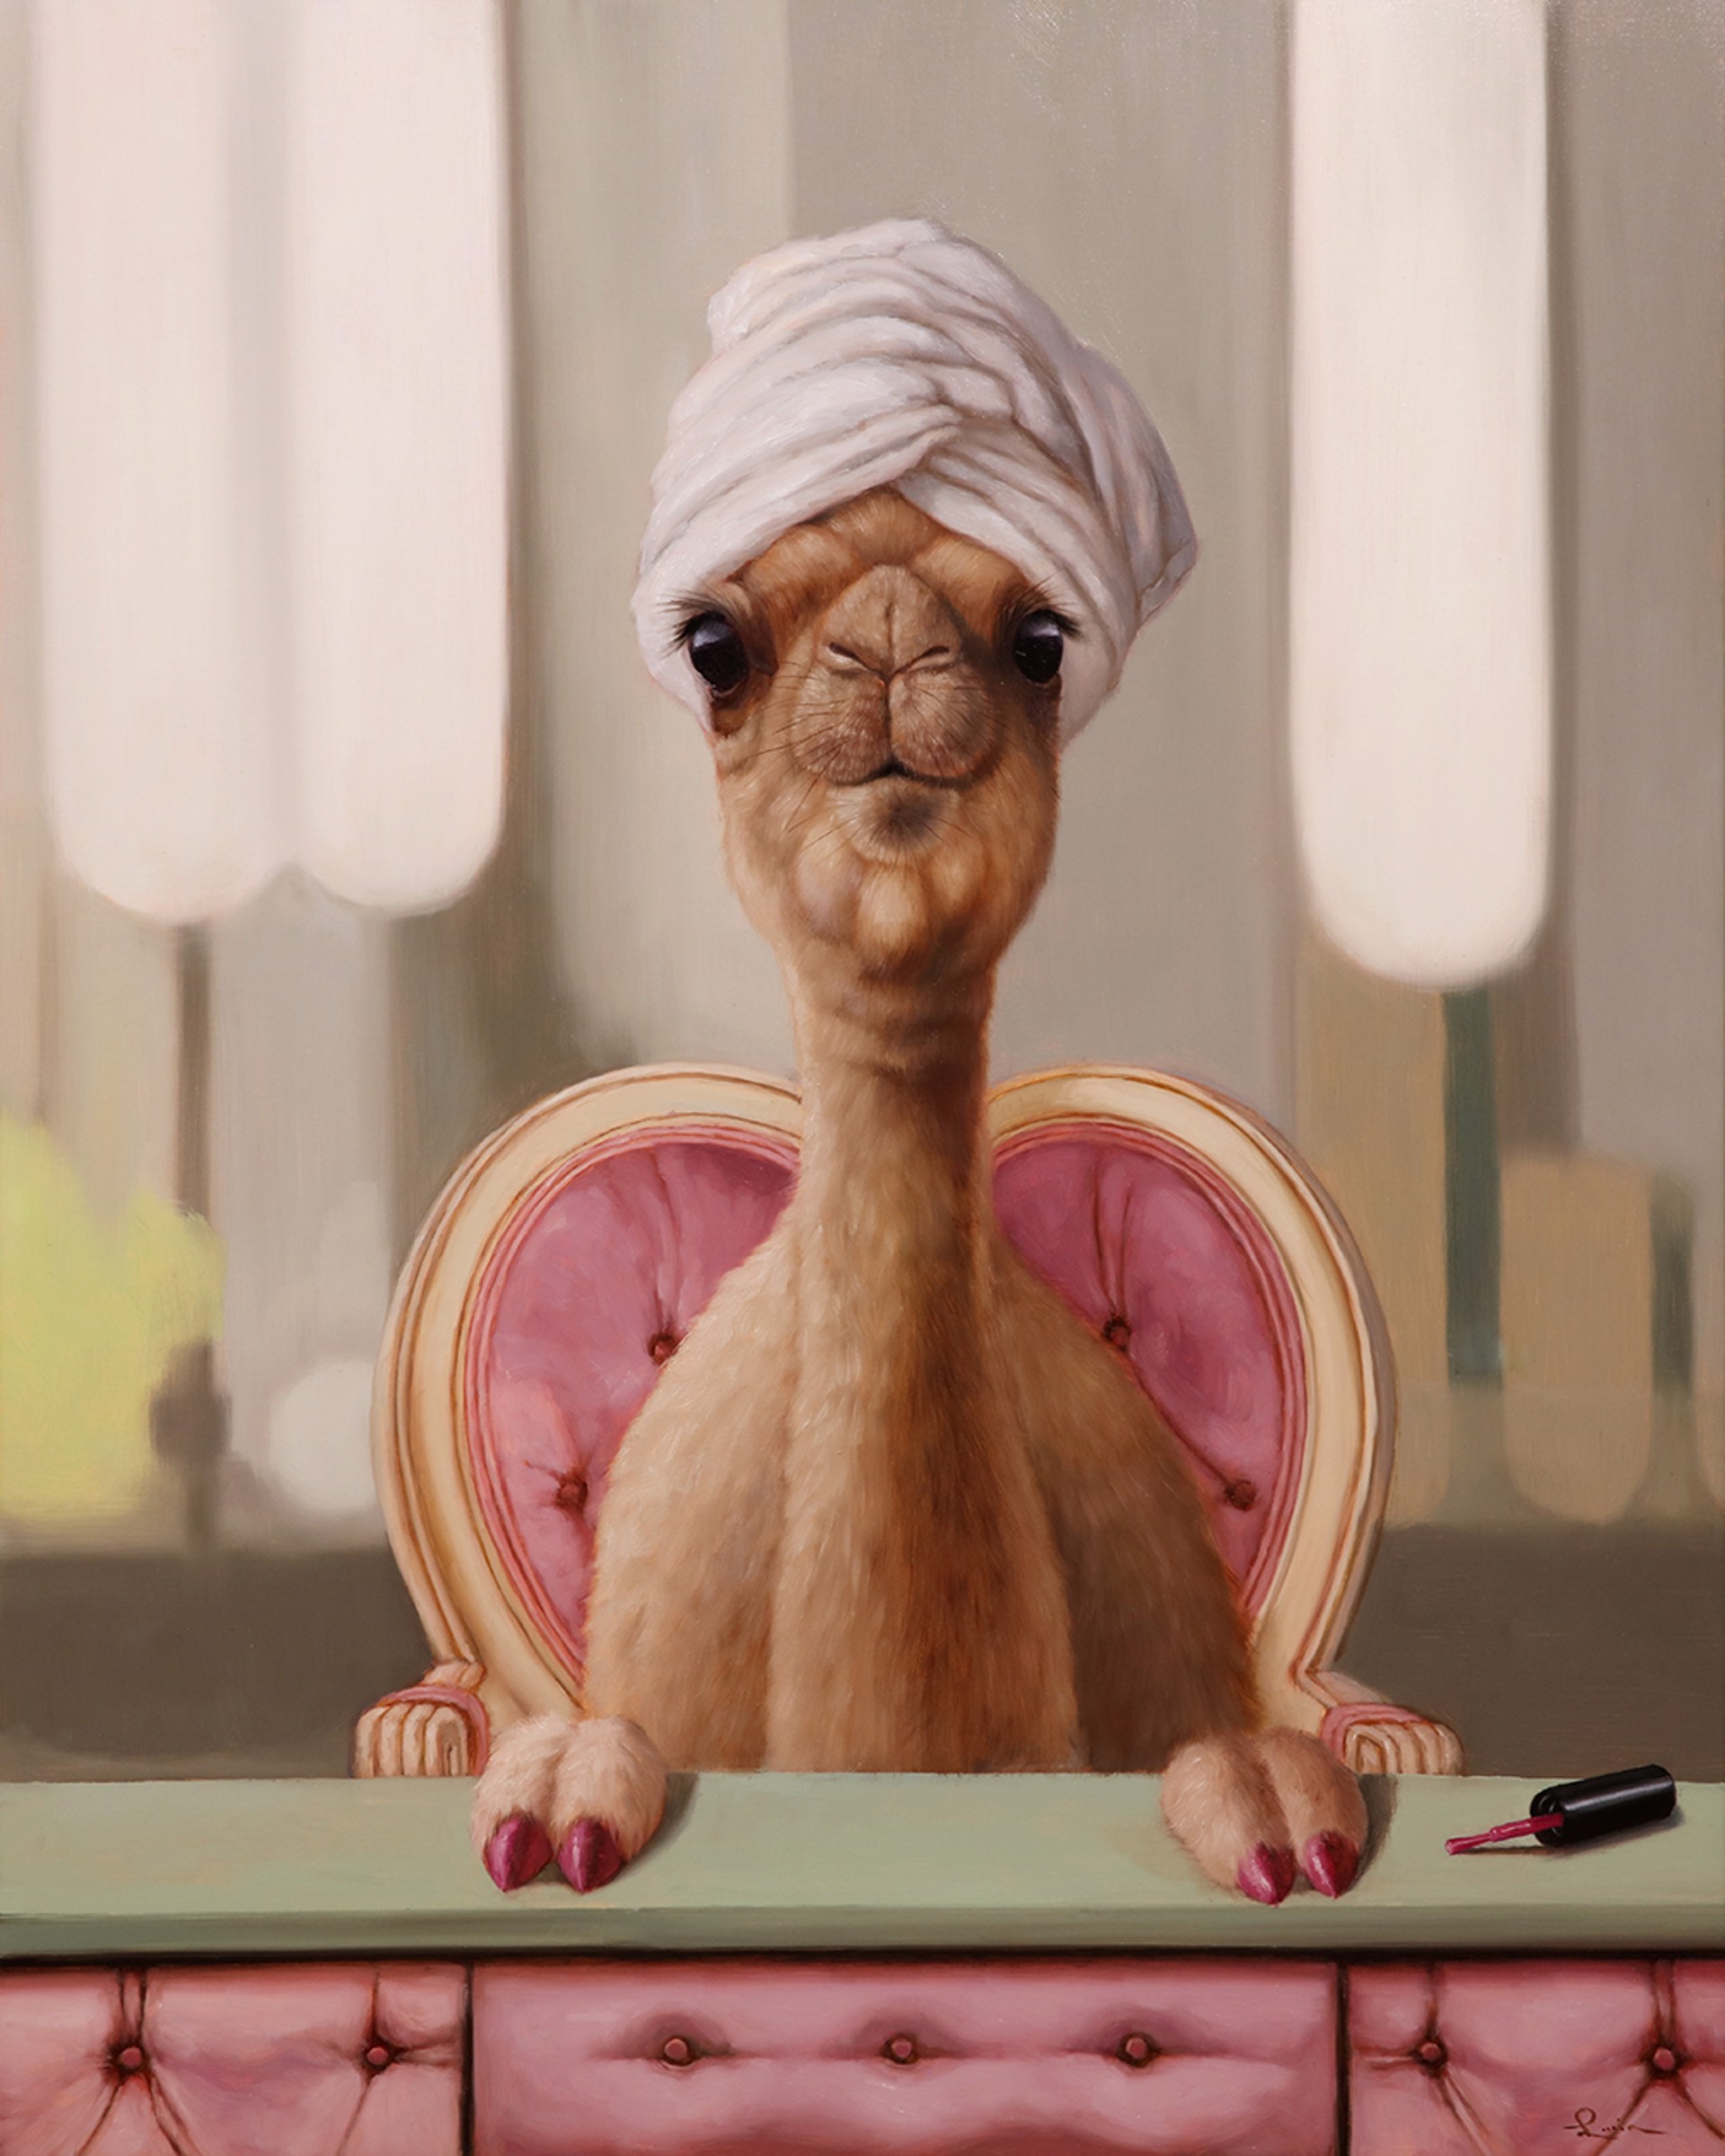 Camel Toe by Lucia Heffernan